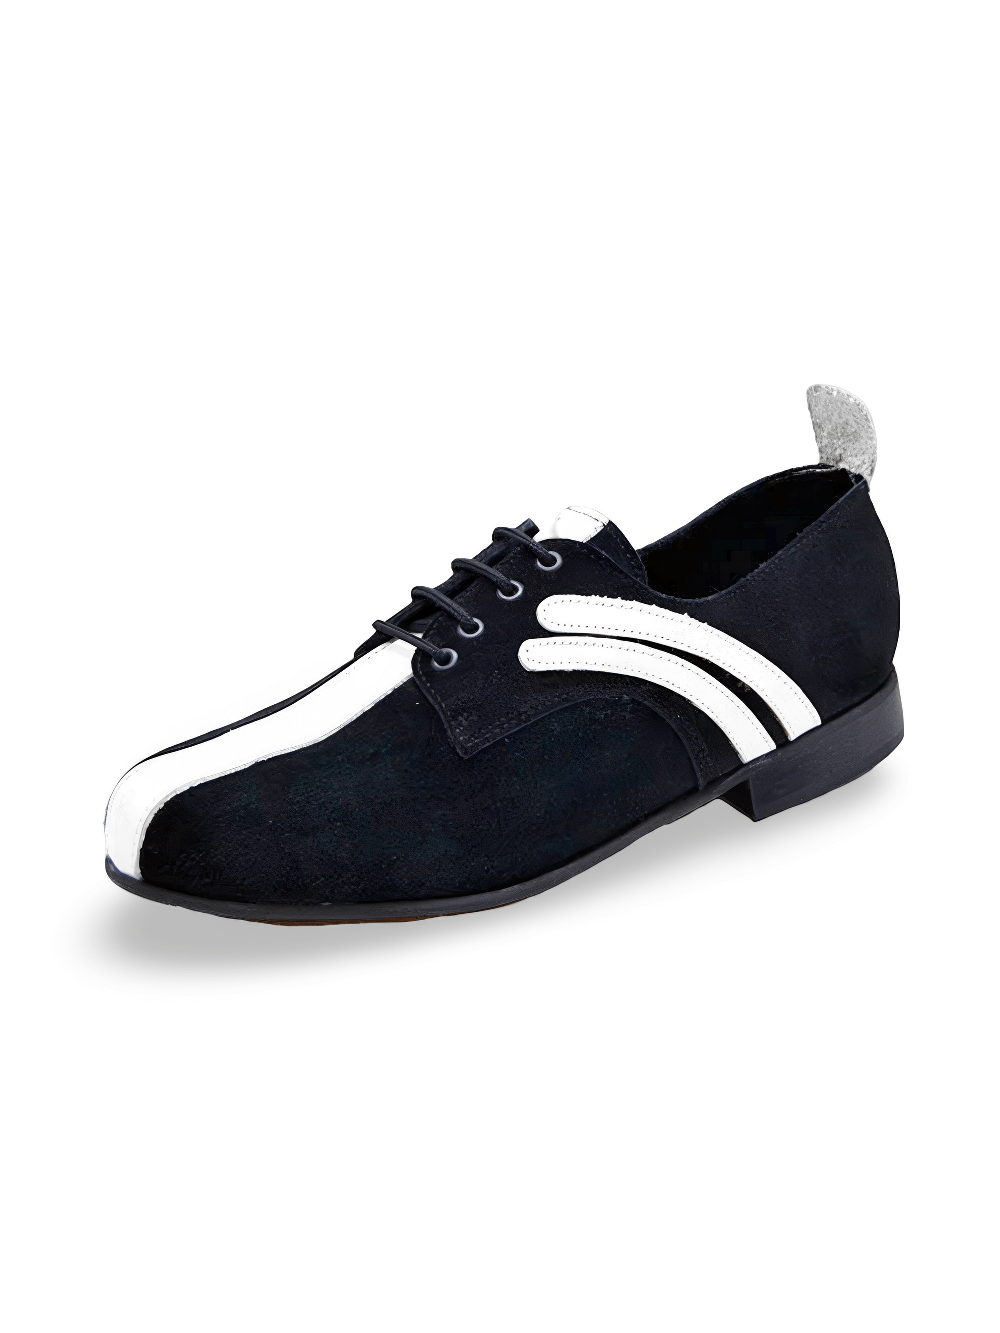 Chaussures de bowling classiques unisexes en cuir noir et blanc